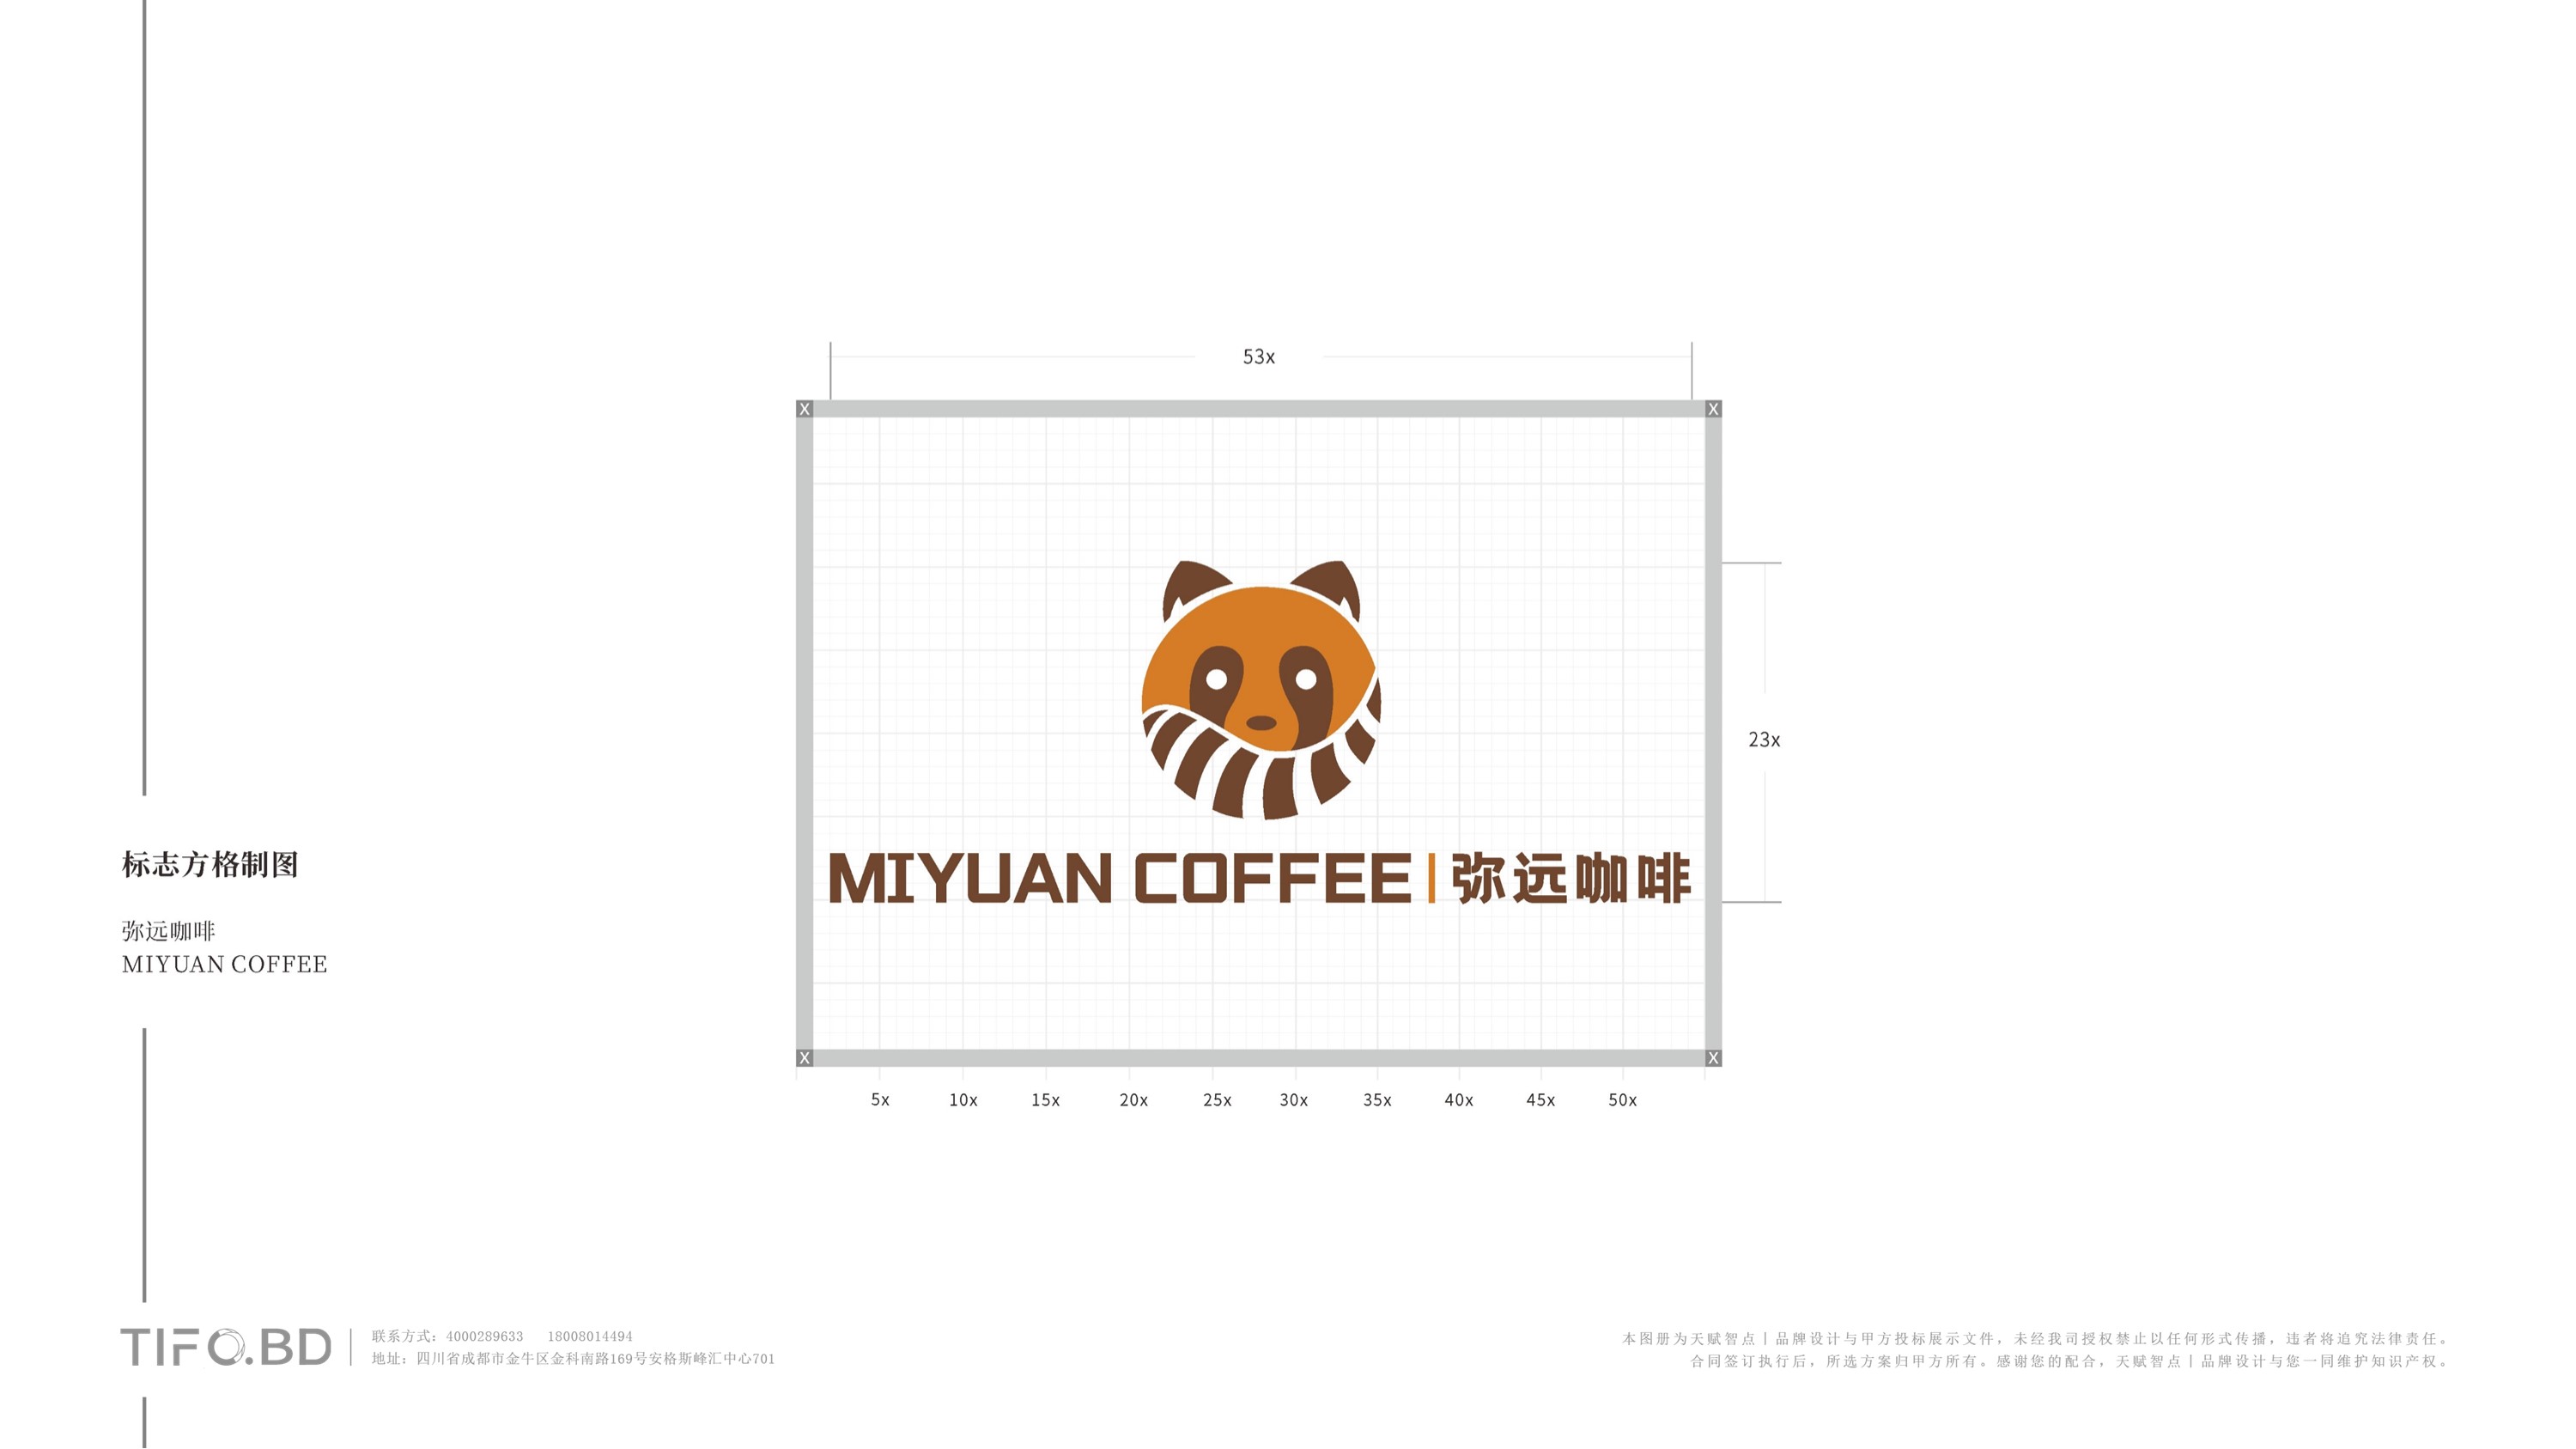 咖啡餐饮品牌全案设计 (34).jpg